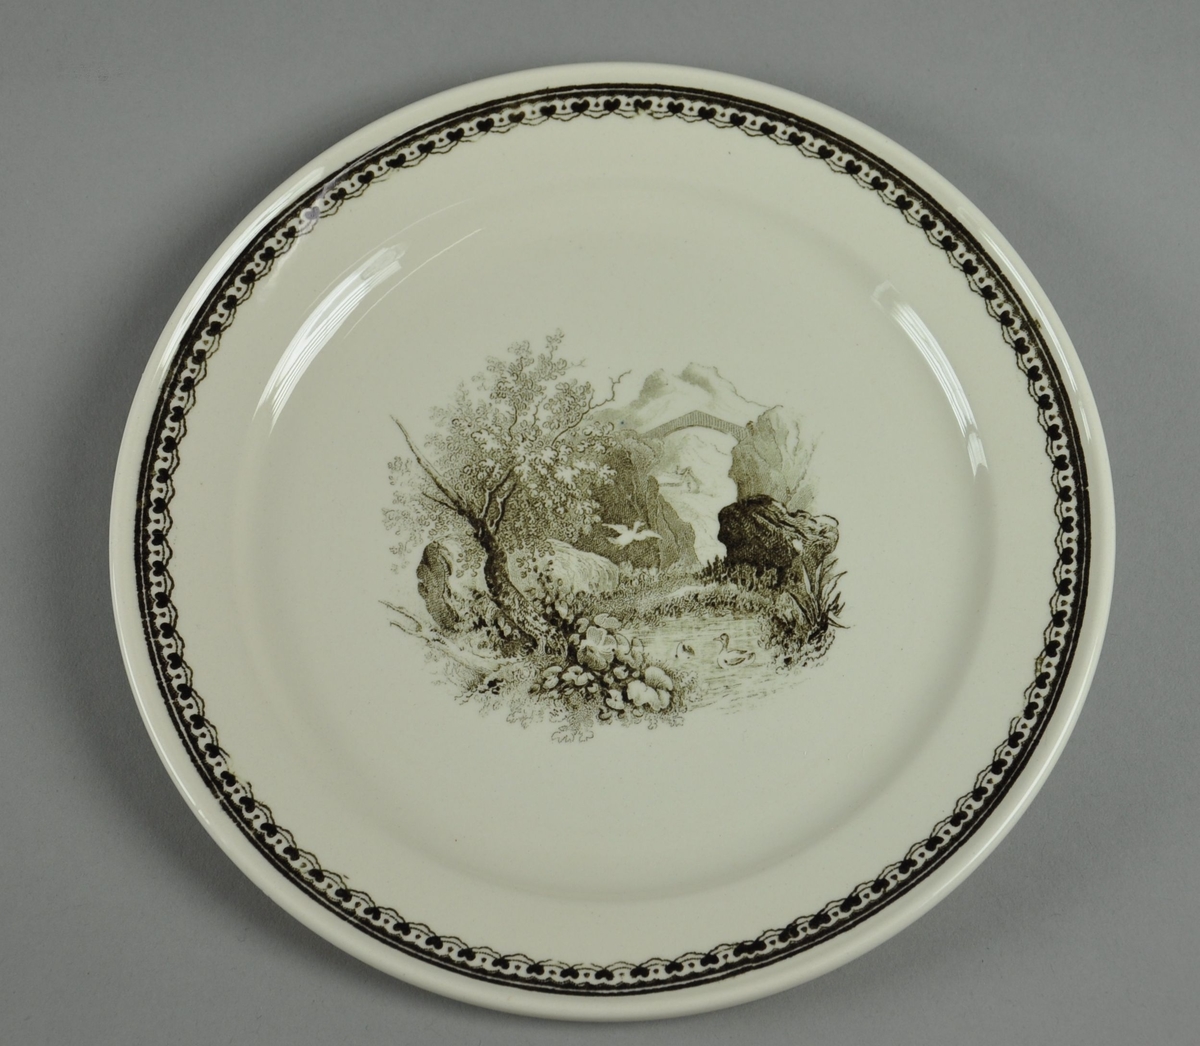 Asjett av glassert keramikk. Asjetten har svart dekortrykk av naturlandskap med bru i bakgrunnen, samt en borde langs randen.